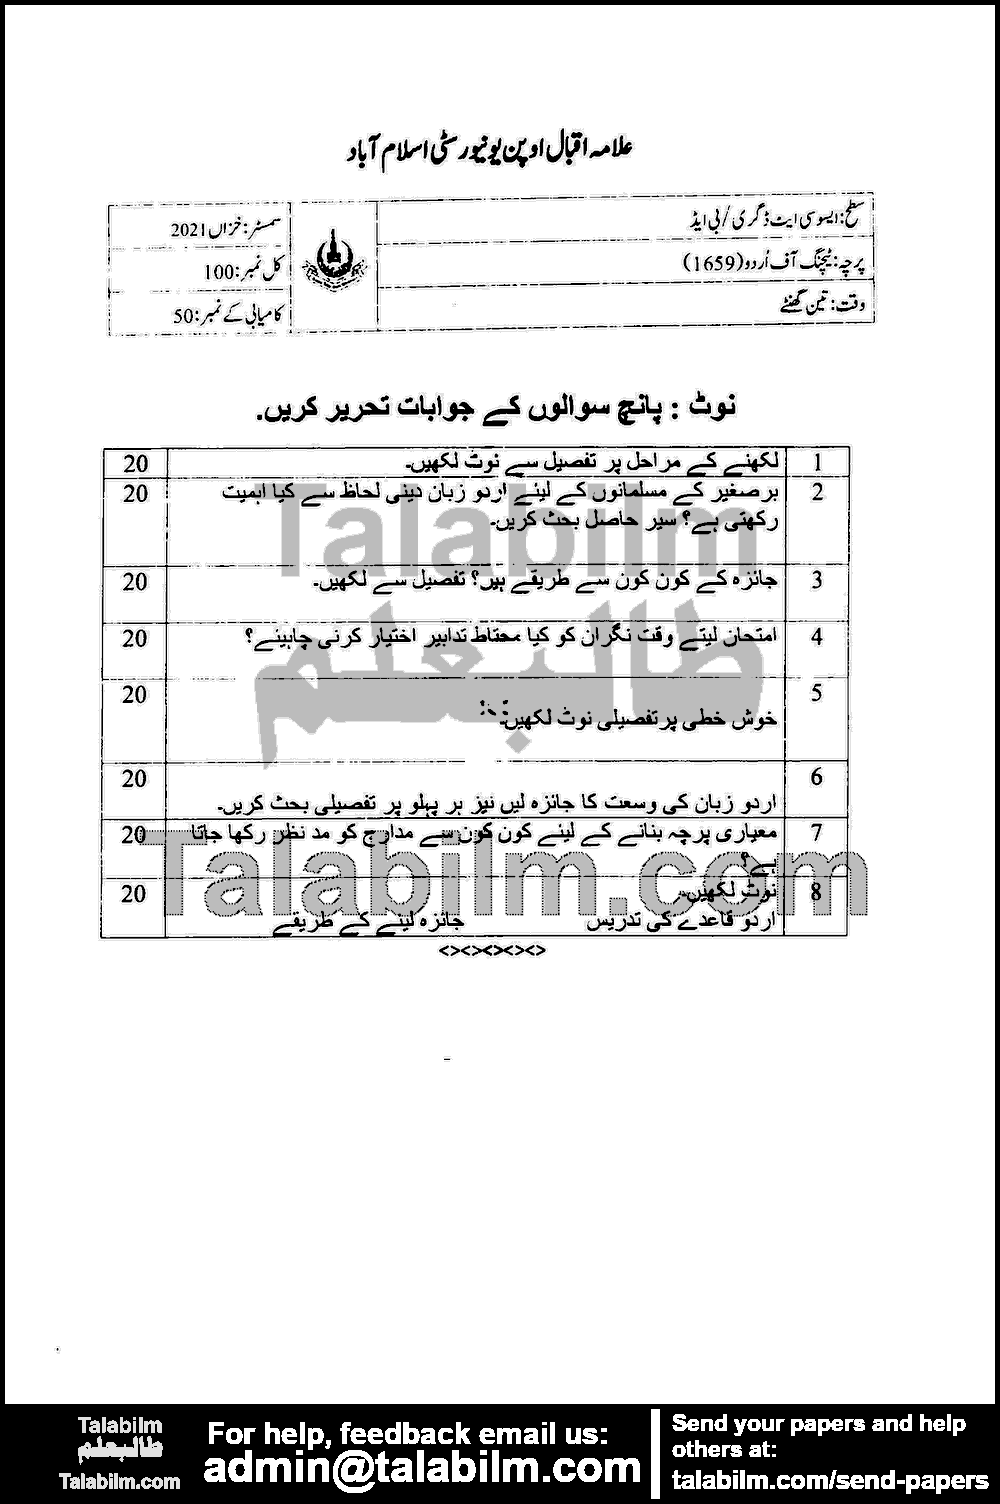 Teaching of Urdu 1659 past paper for Autumn 2021